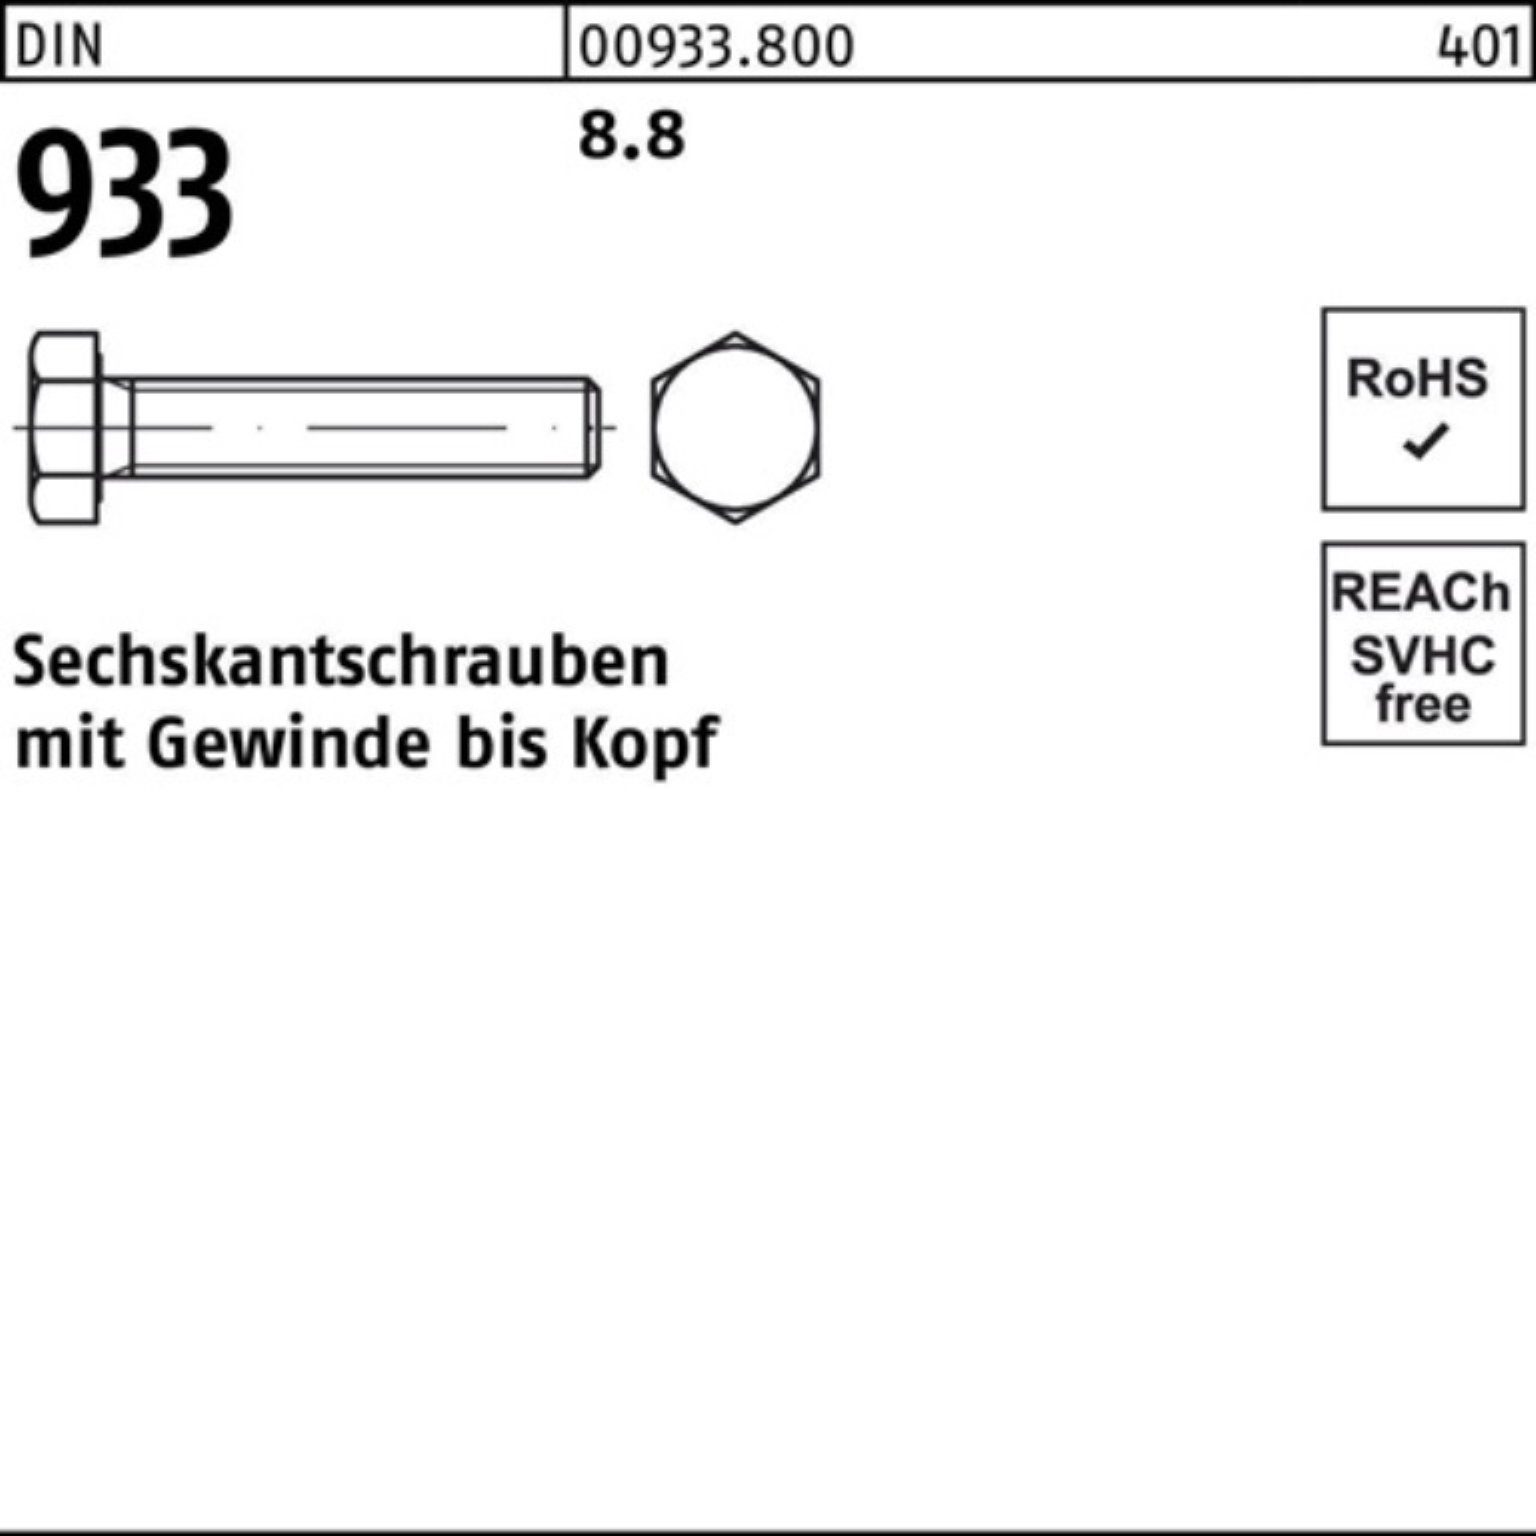 Pack 933 8.8 200 Sechskantschraube 45 DIN Stück VG M6x DIN 200er Reyher 933 Sechskantschraube